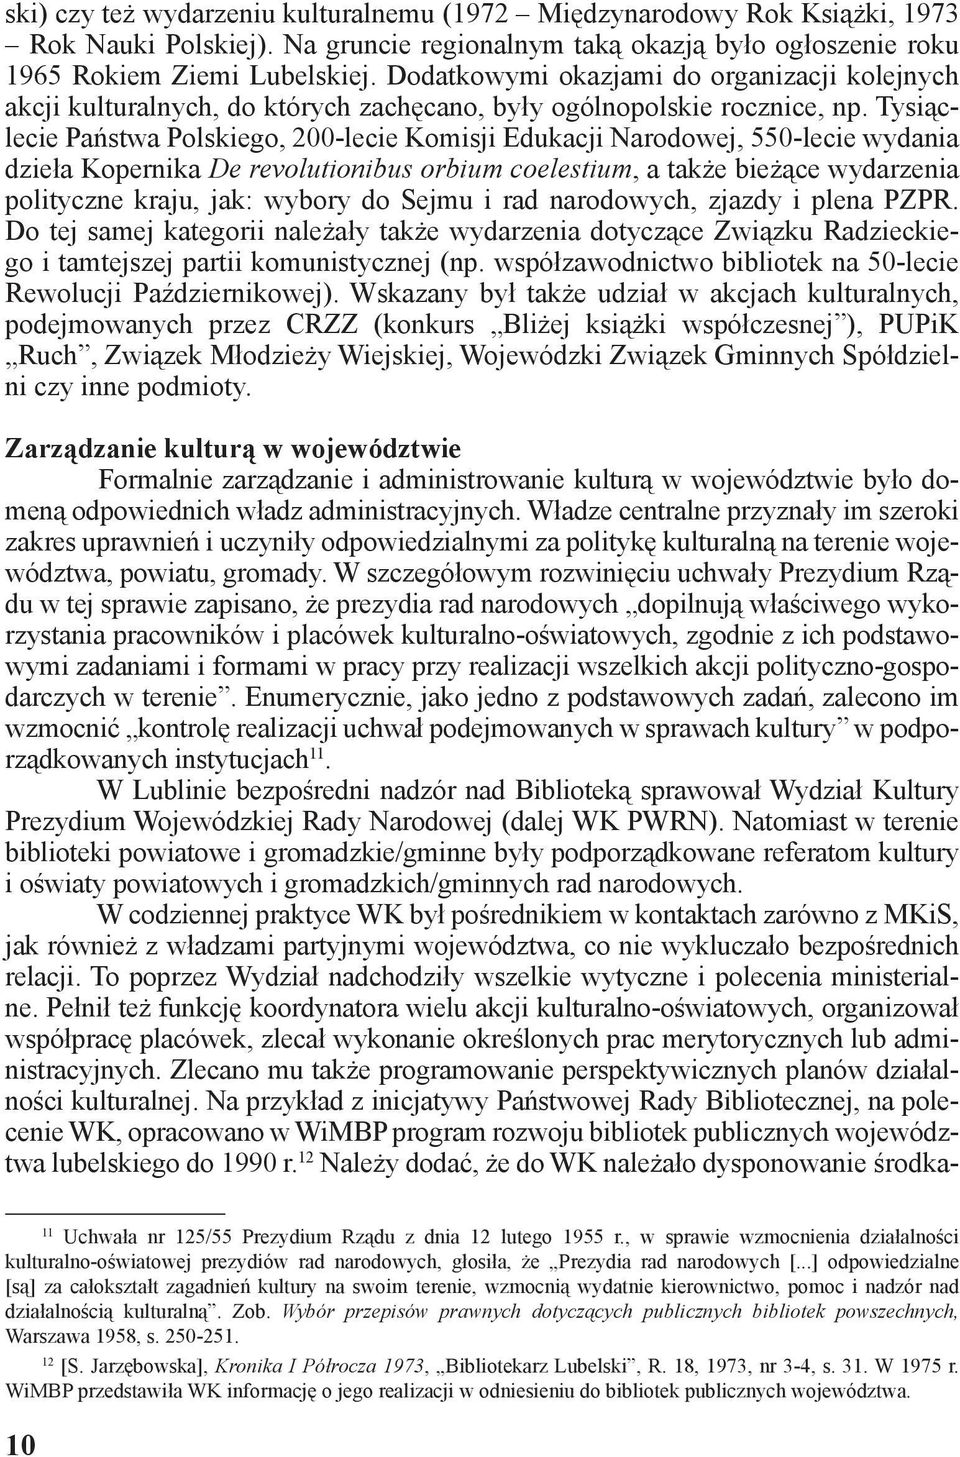 Tysiąclecie Państwa Polskiego, 200-lecie Komisji Edukacji Narodowej, 550-lecie wydania dzieła Kopernika De revolutionibus orbium coelestium, a także bieżące wydarzenia polityczne kraju, jak: wybory